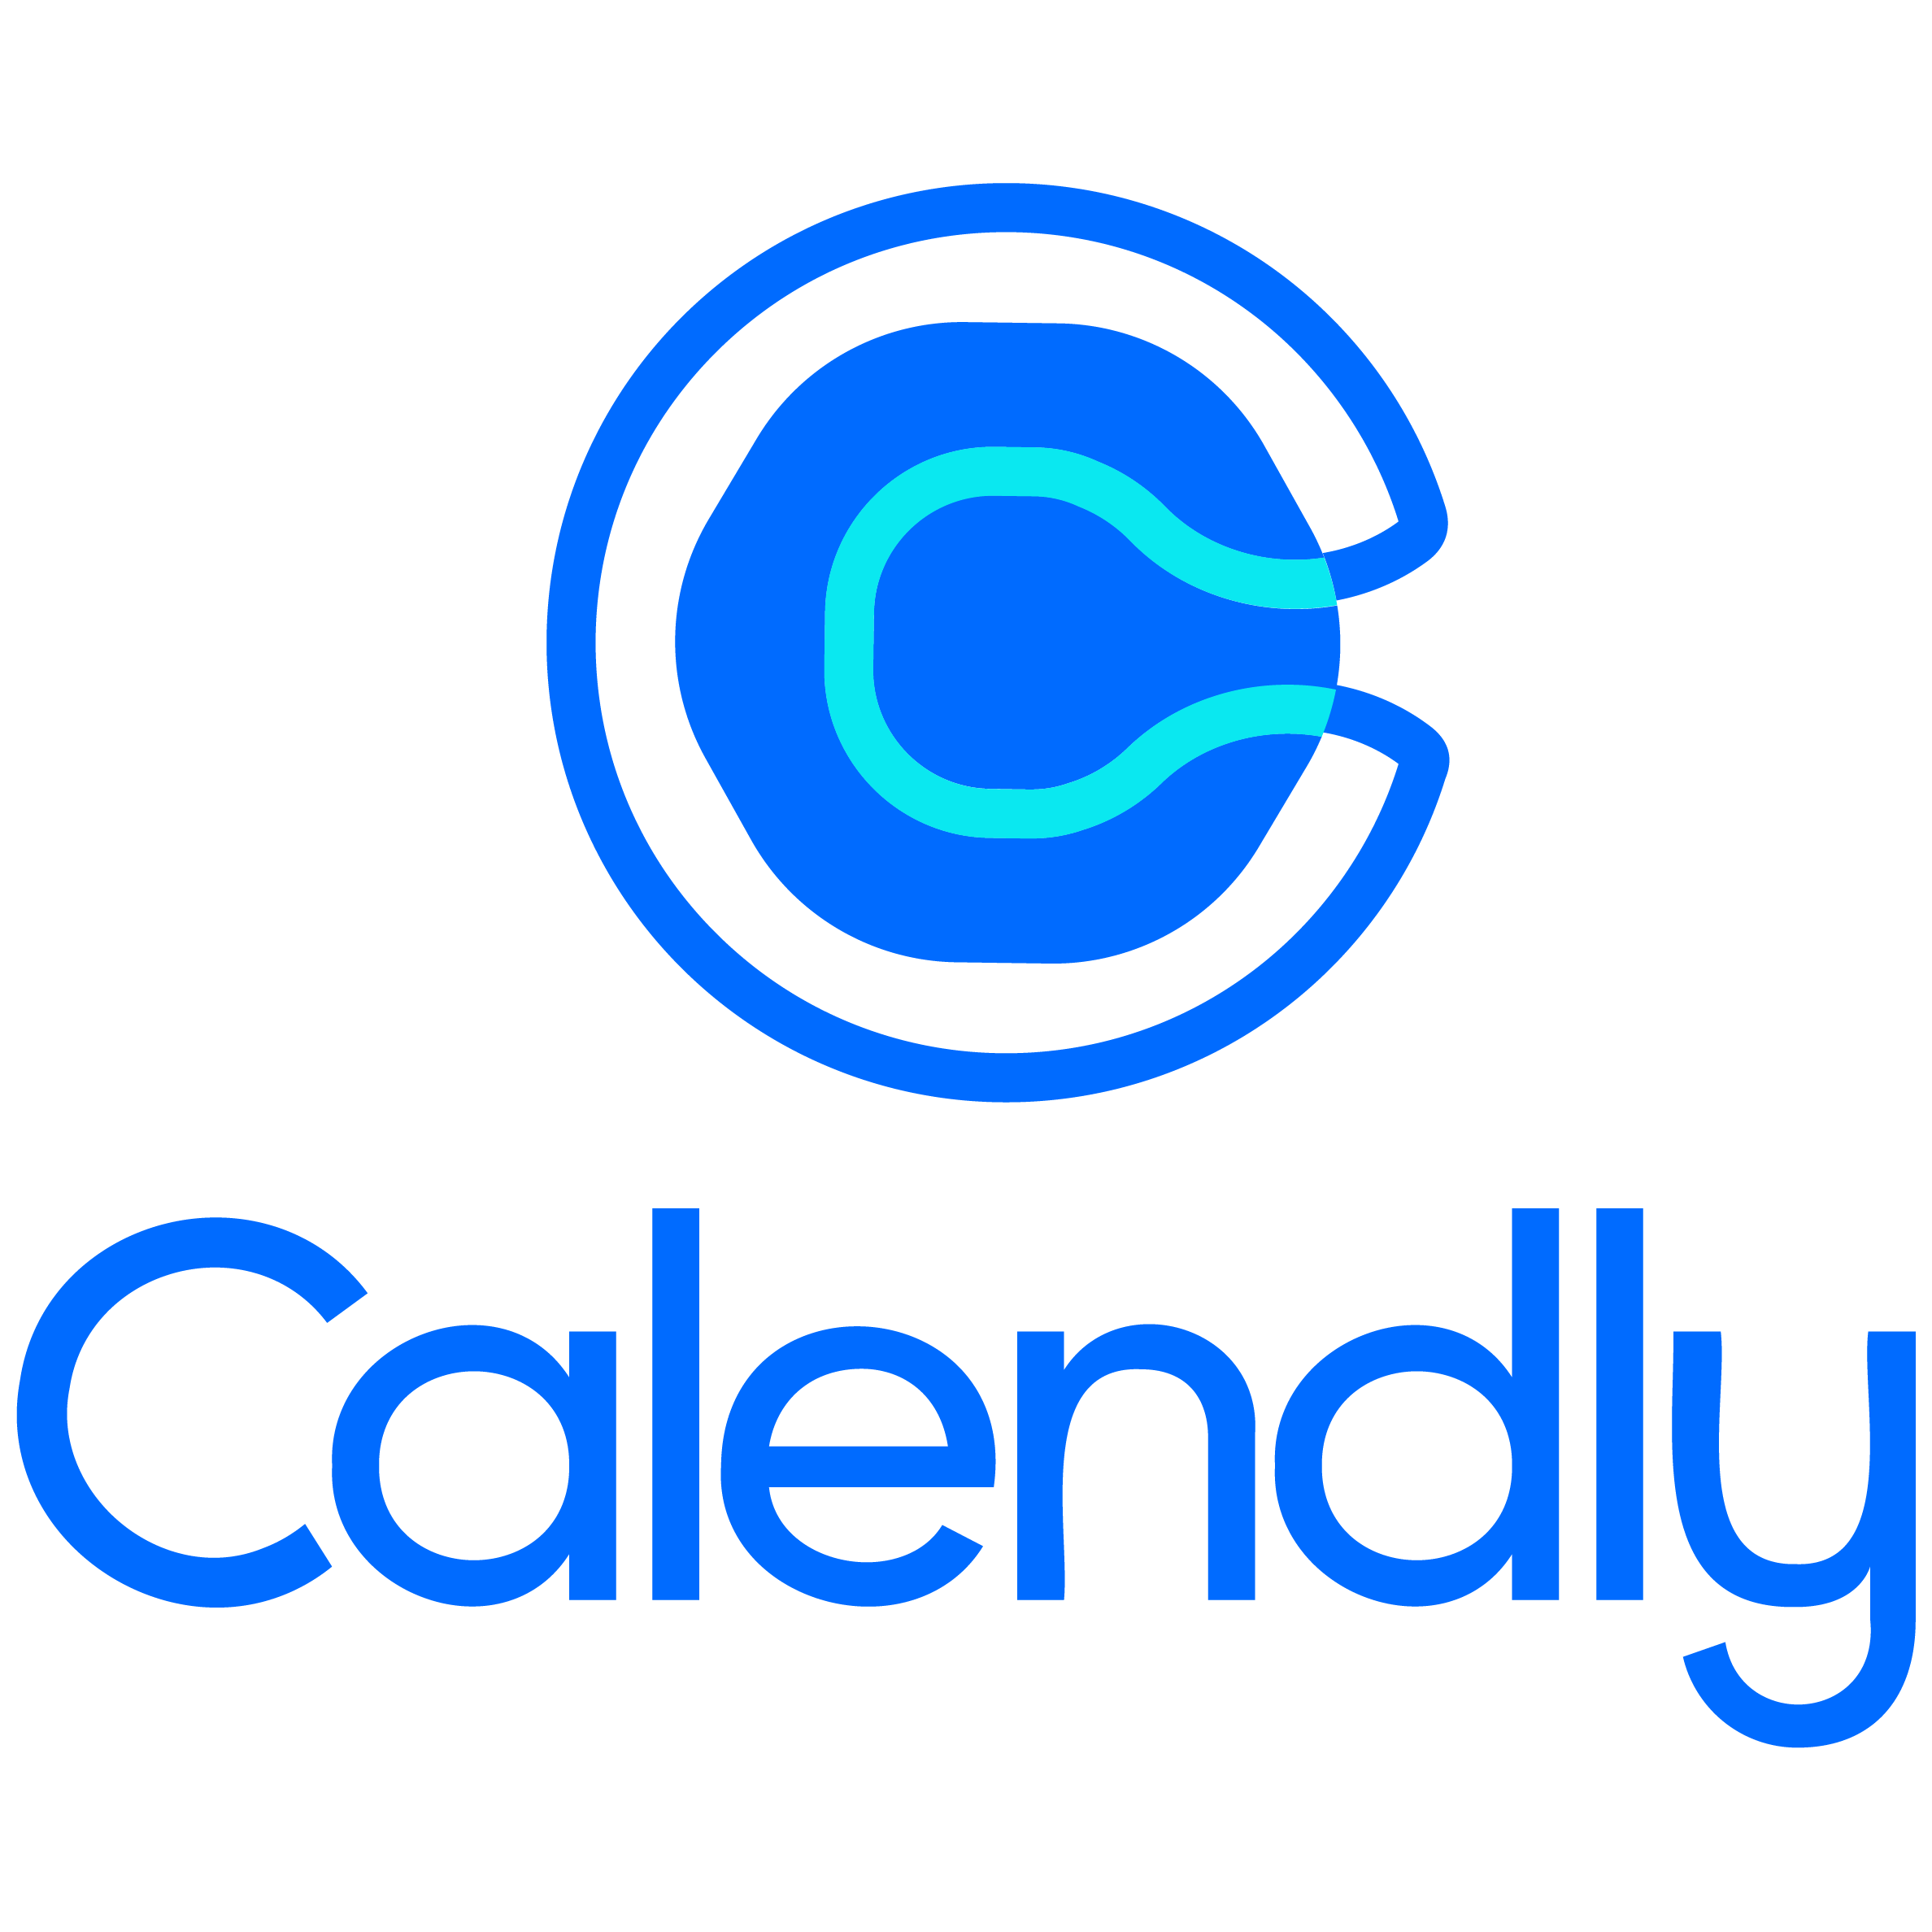 Logo Calendly